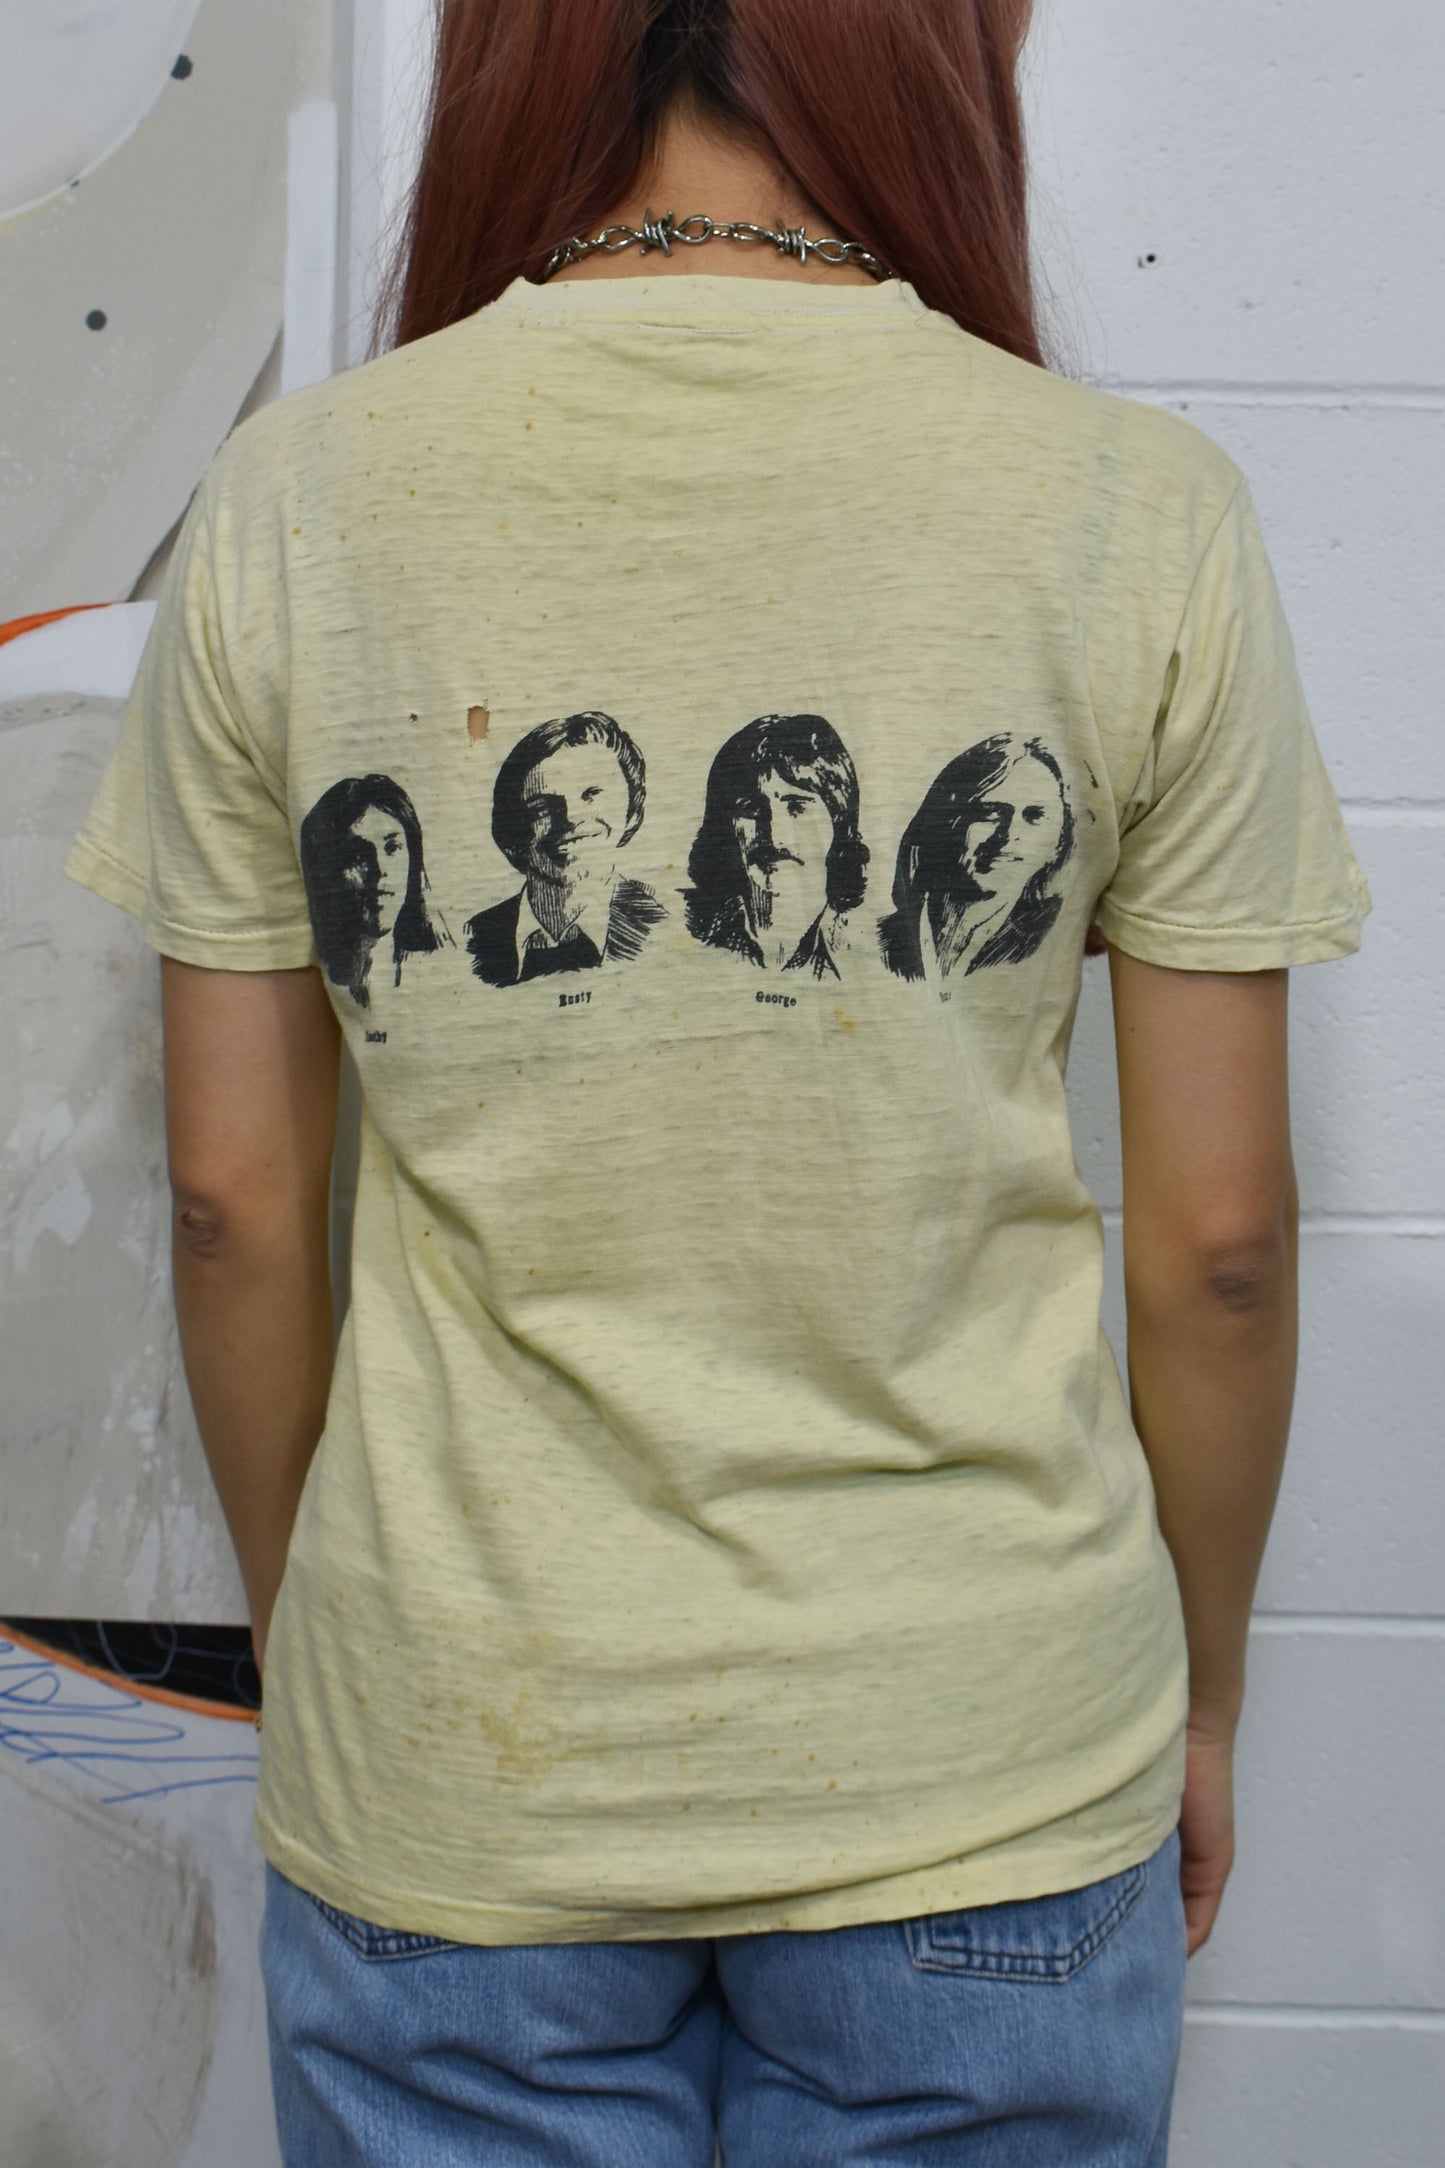 Vintage 1970s "Poco" Cantamos Band T-shirt